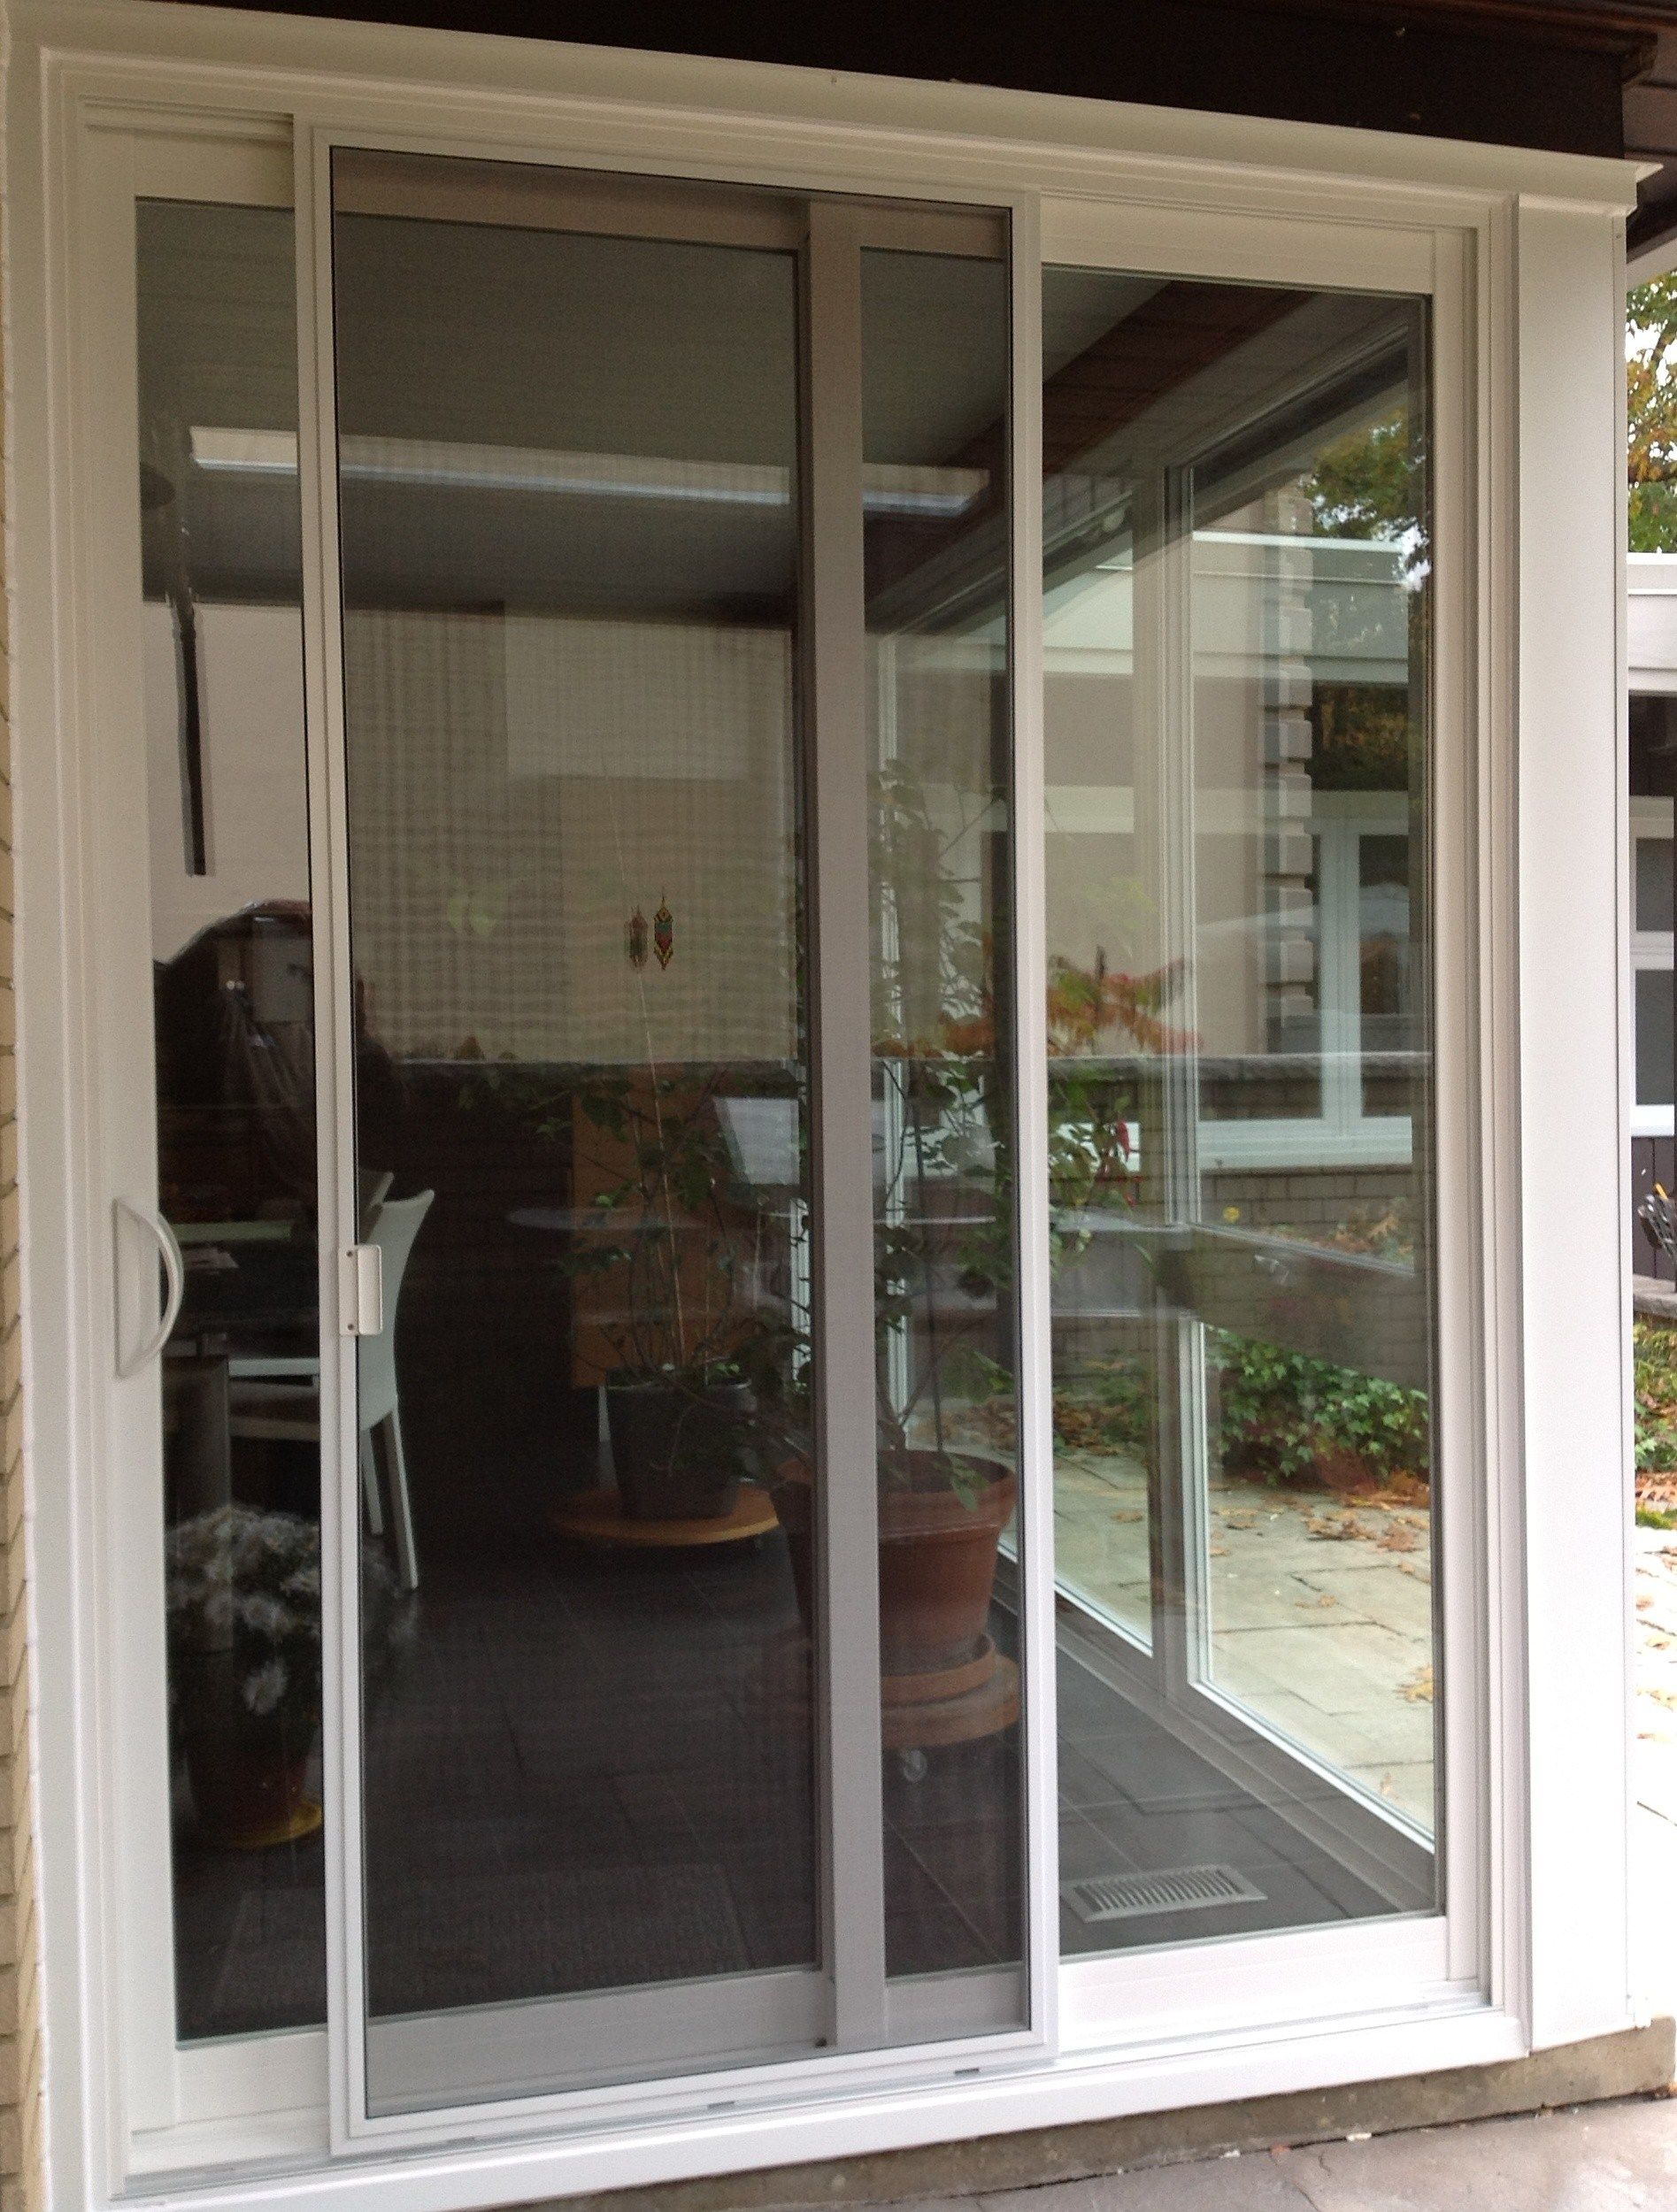 Best Of Door Handles For Sliding Glass Doors Home Decor in measurements 1895 X 2500